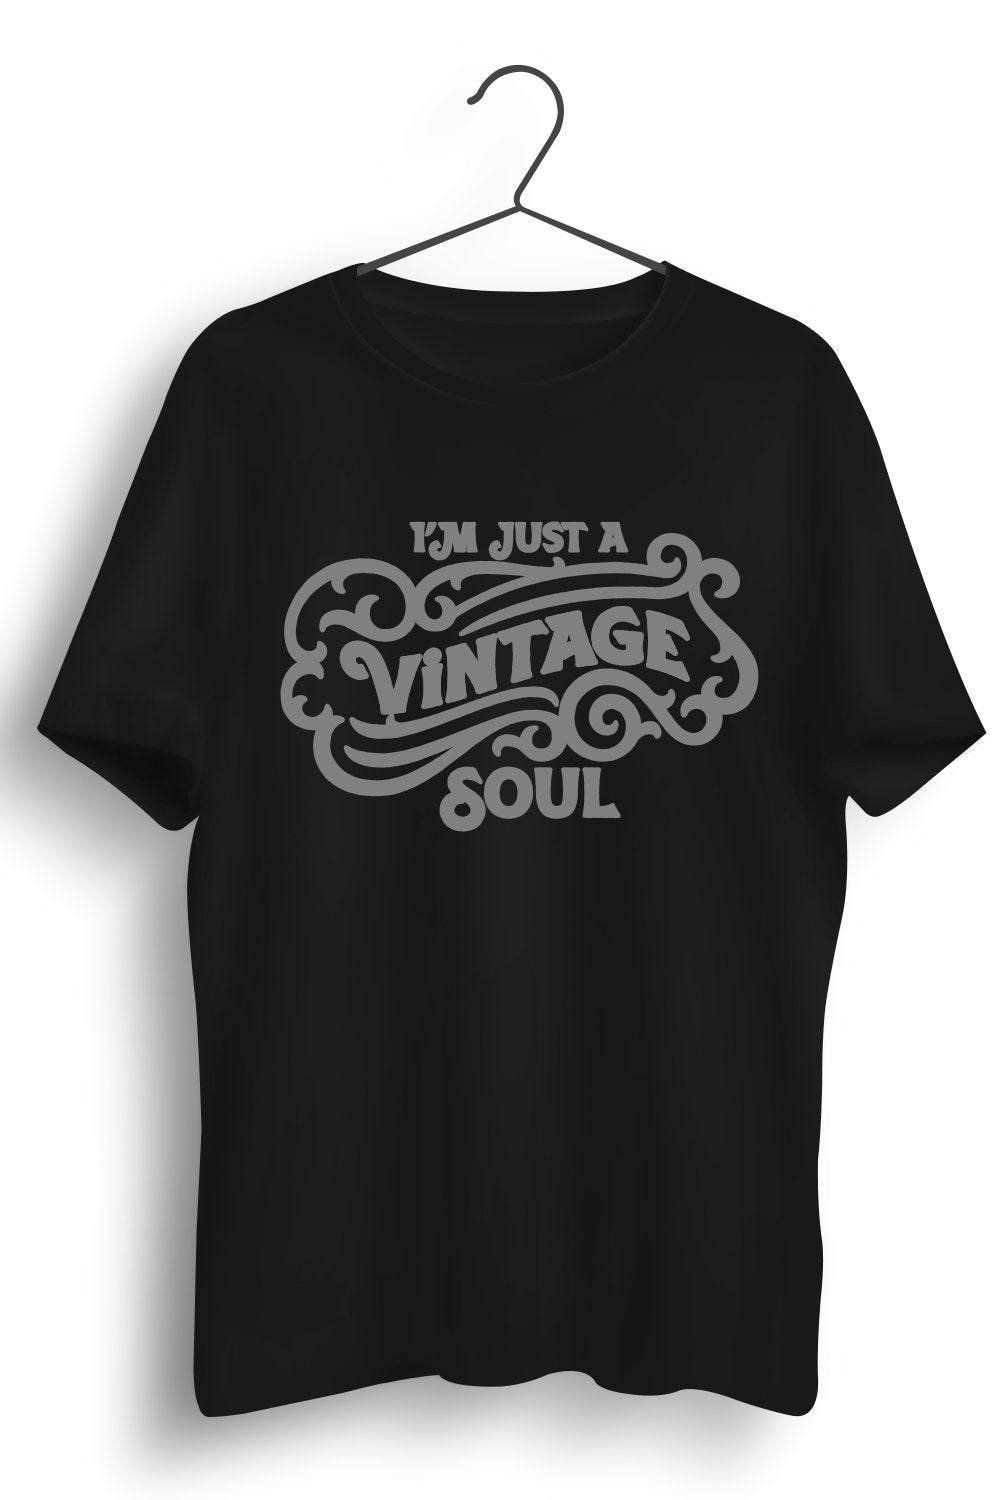 Vintage Soul Graphic Printed Black Tshirt